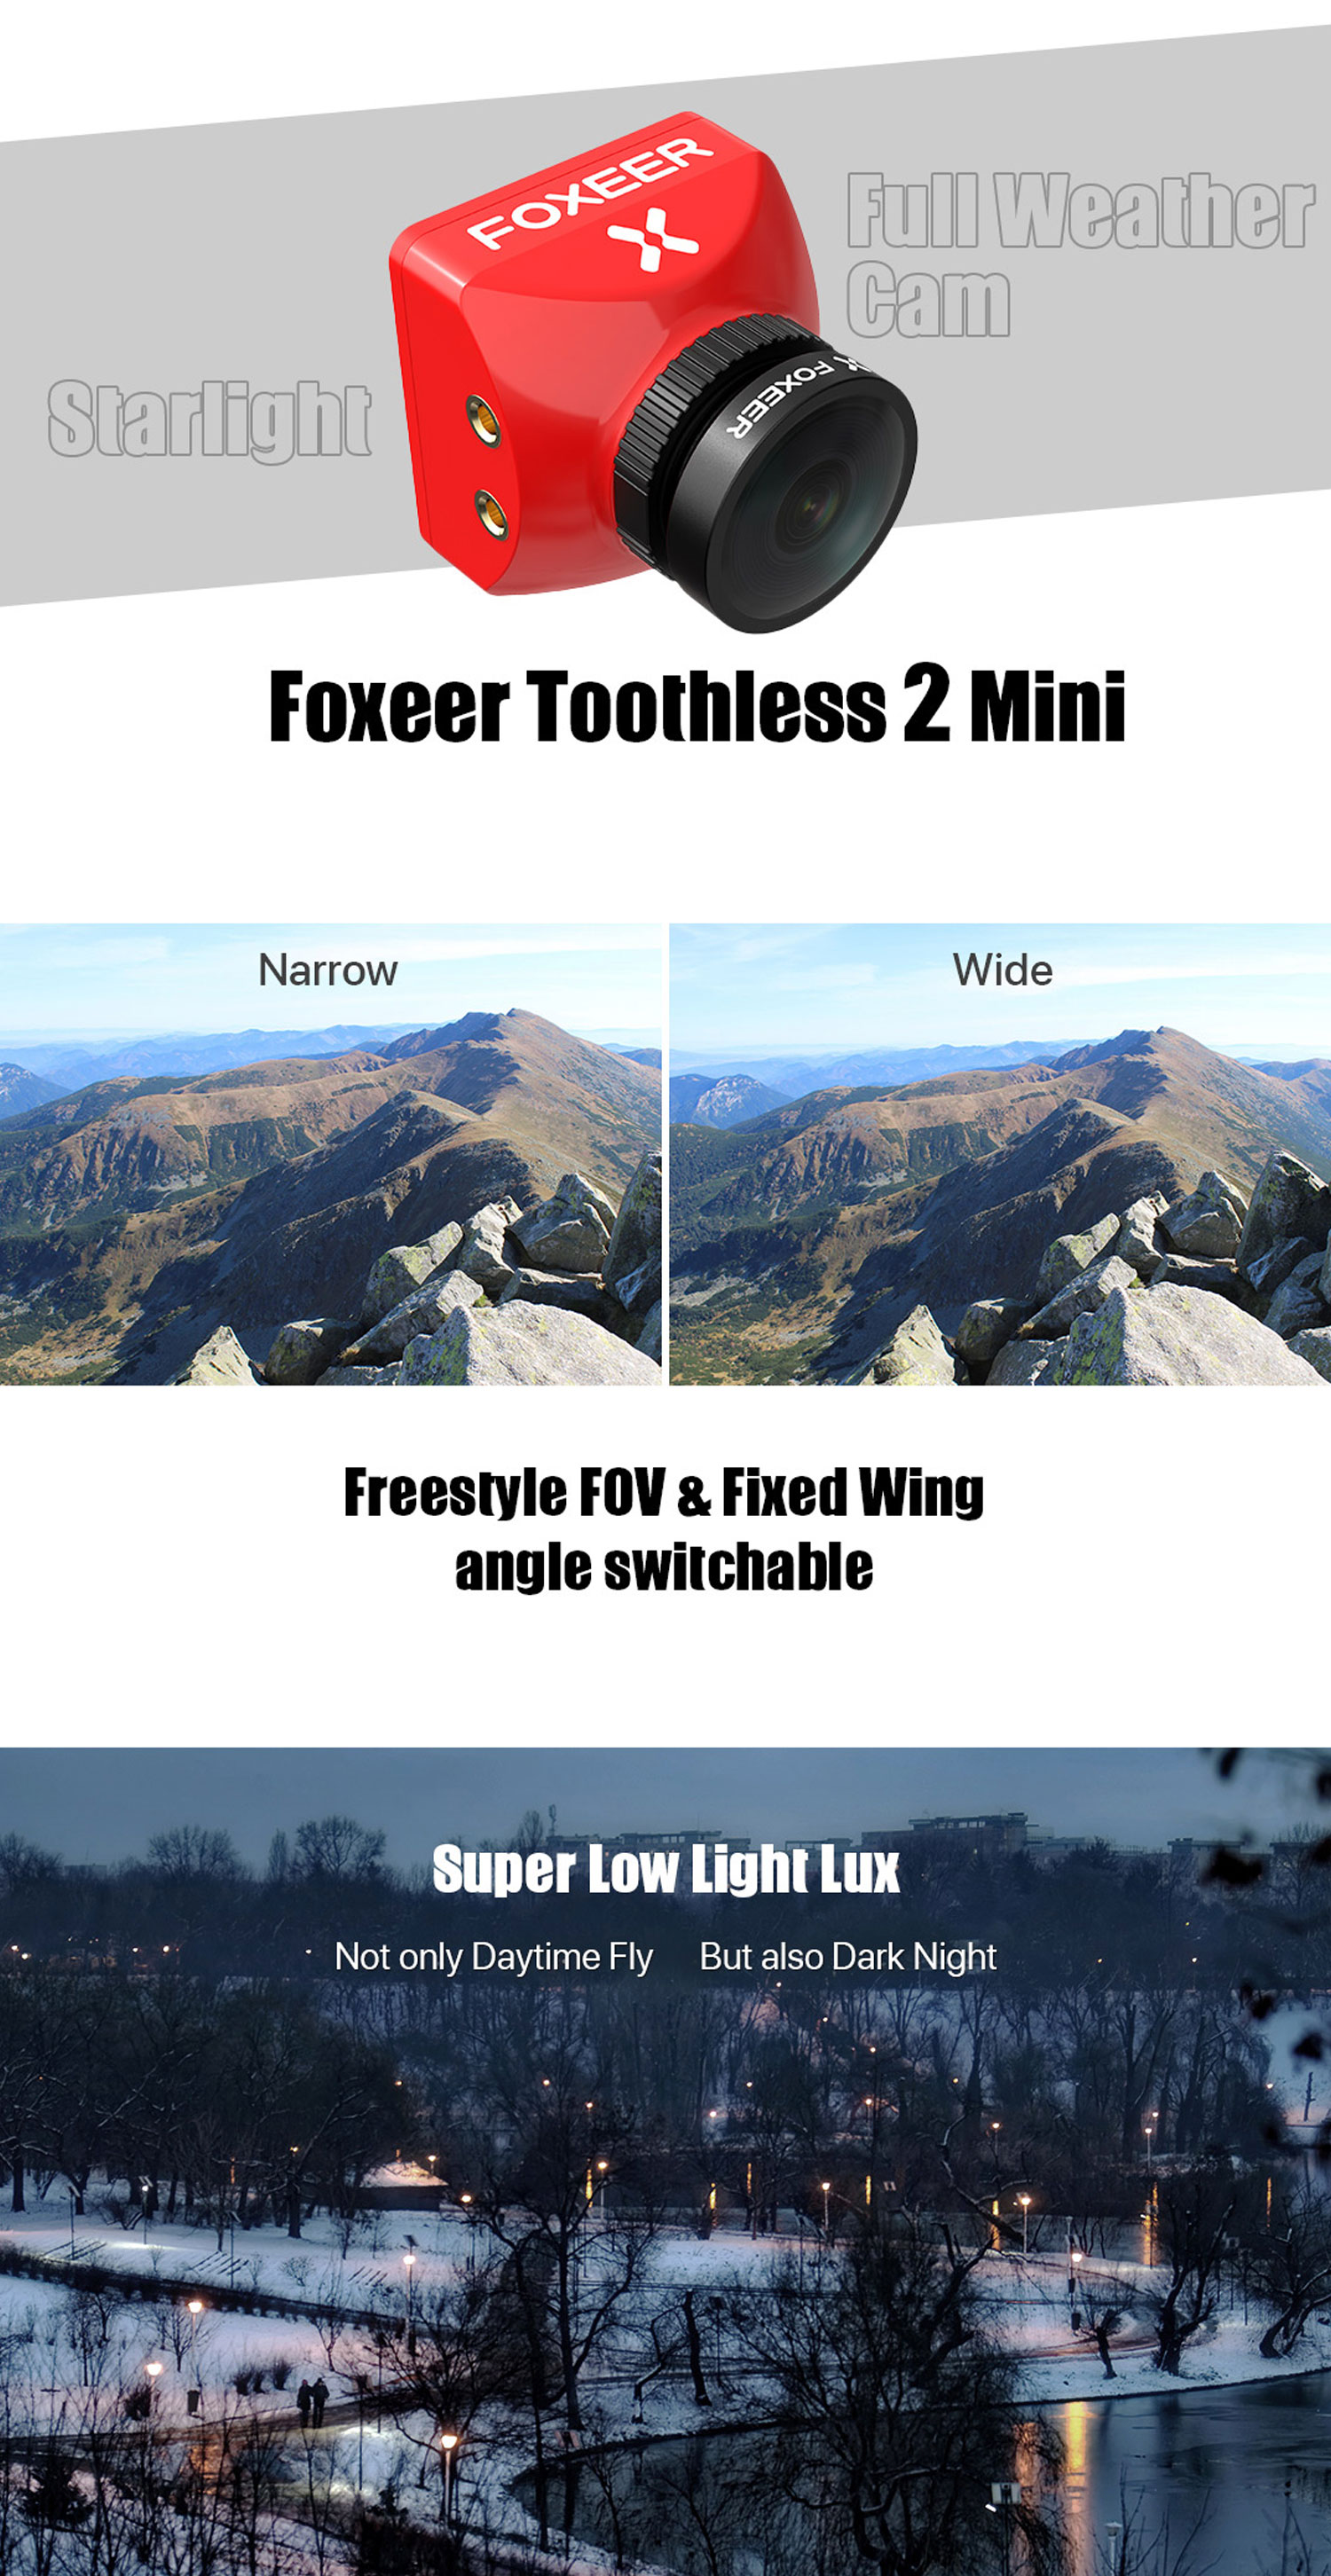 foxeer-toothless-2-mini-fpv-camera.jpg